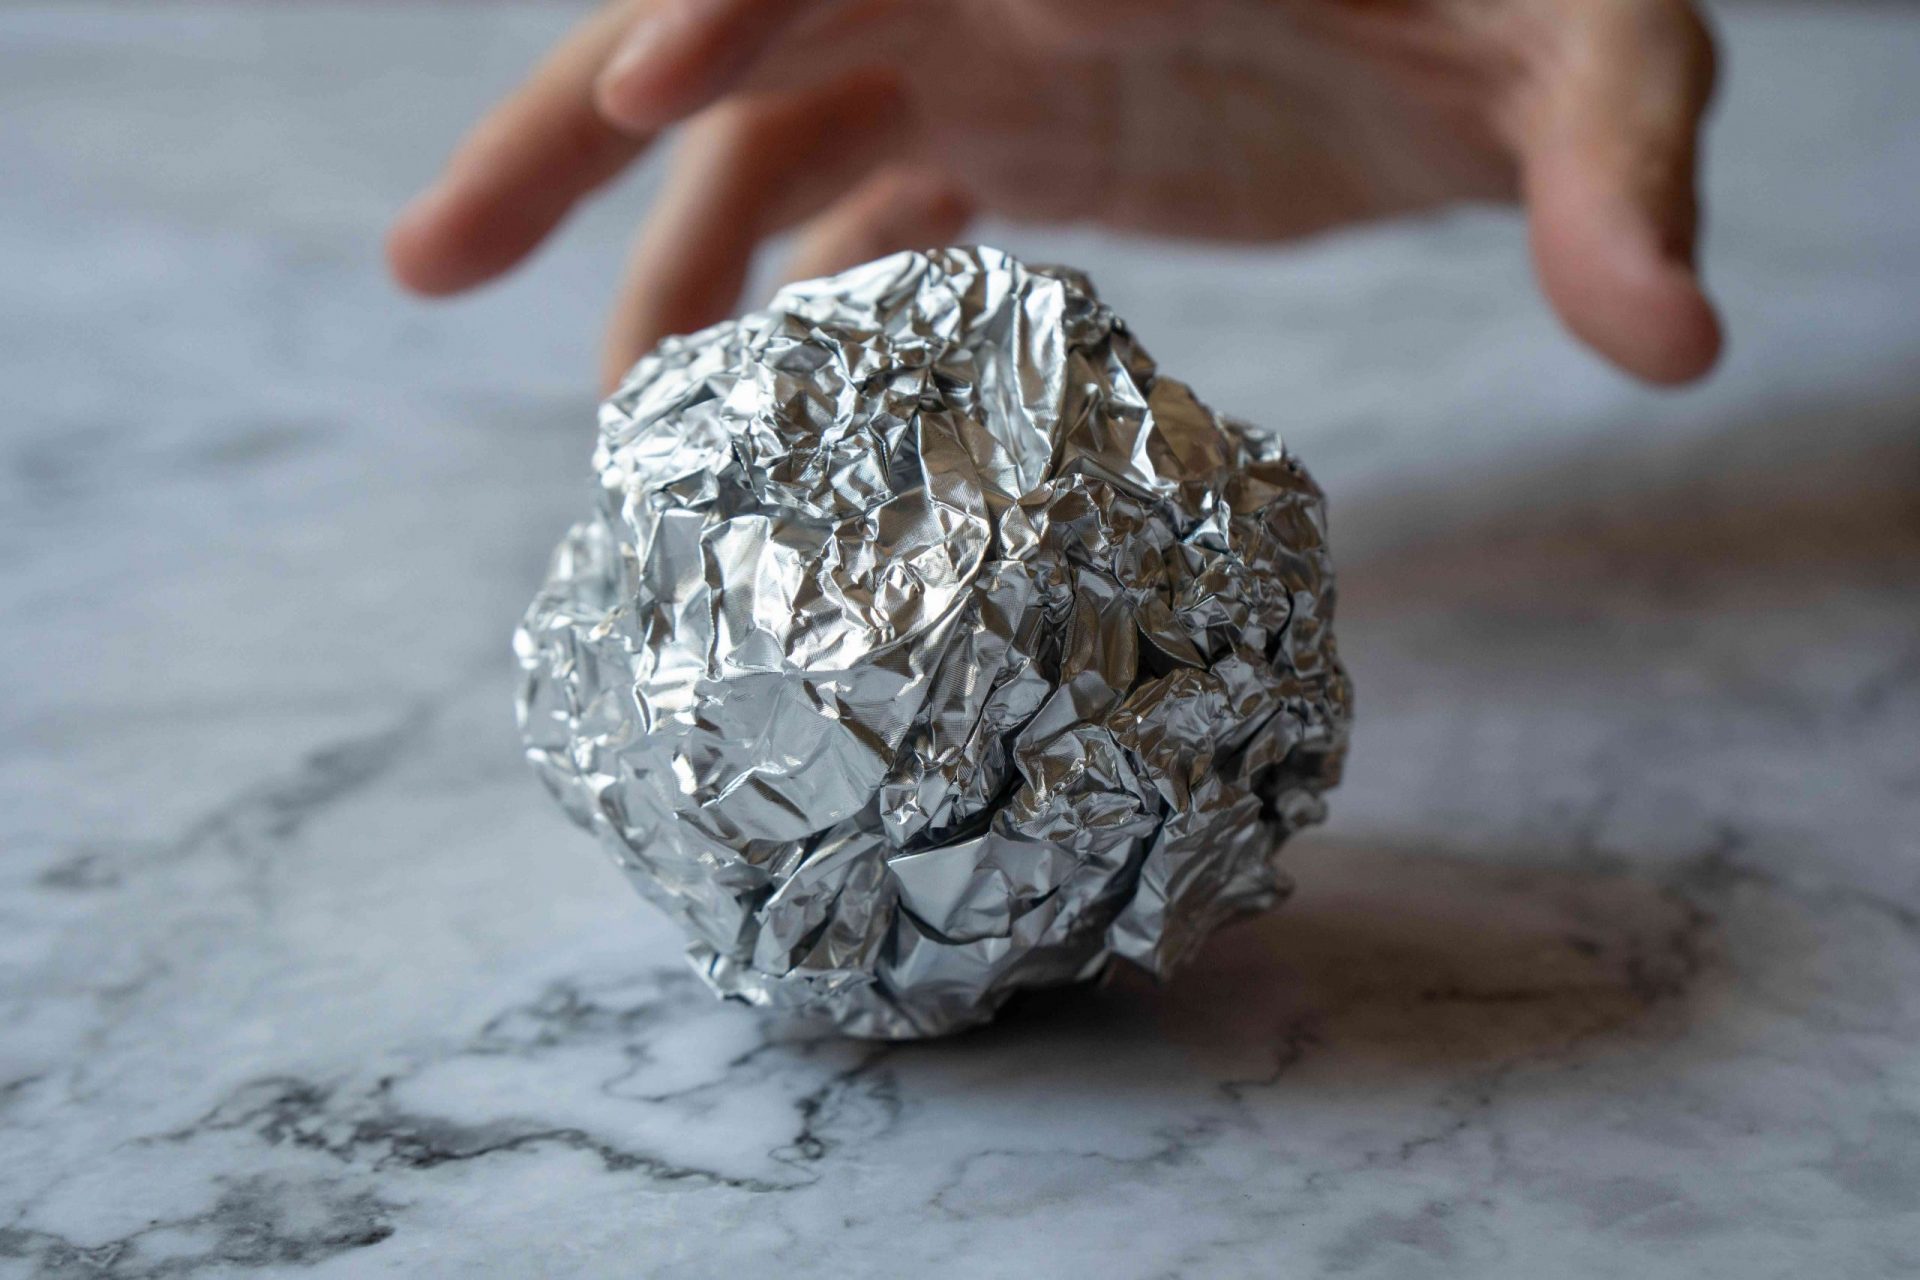 la mano busca una bola de papel de aluminio arrugado en la superficie del mármol